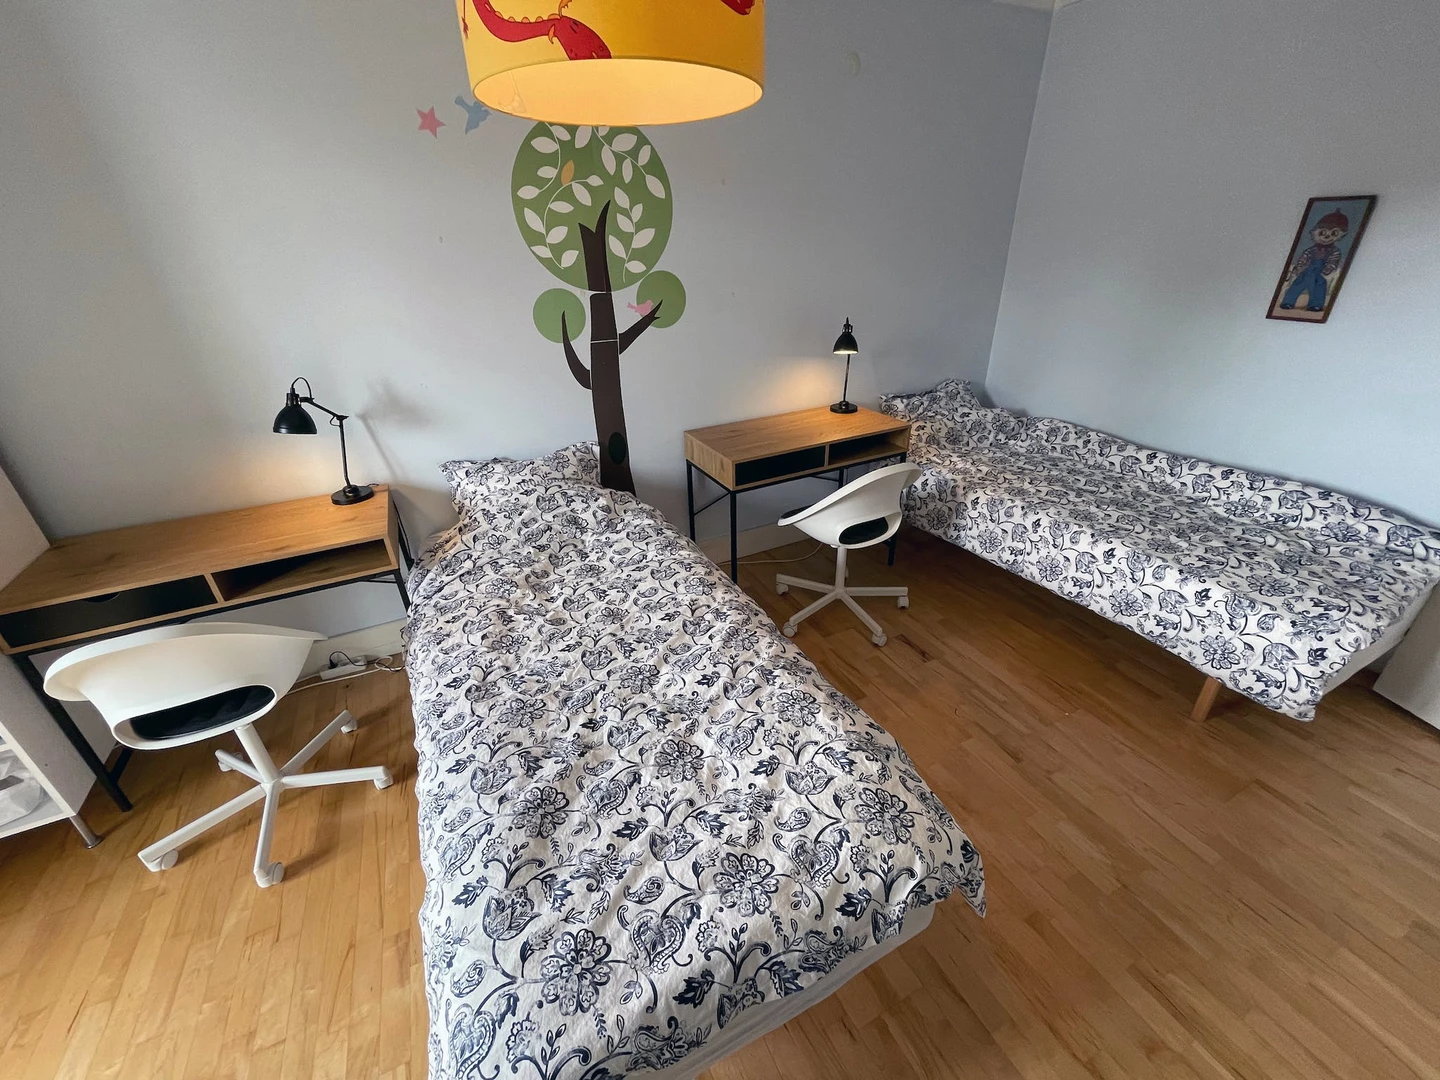 Gemeinsames Zimmer mit einem anderen Studierenden in Reykjavík